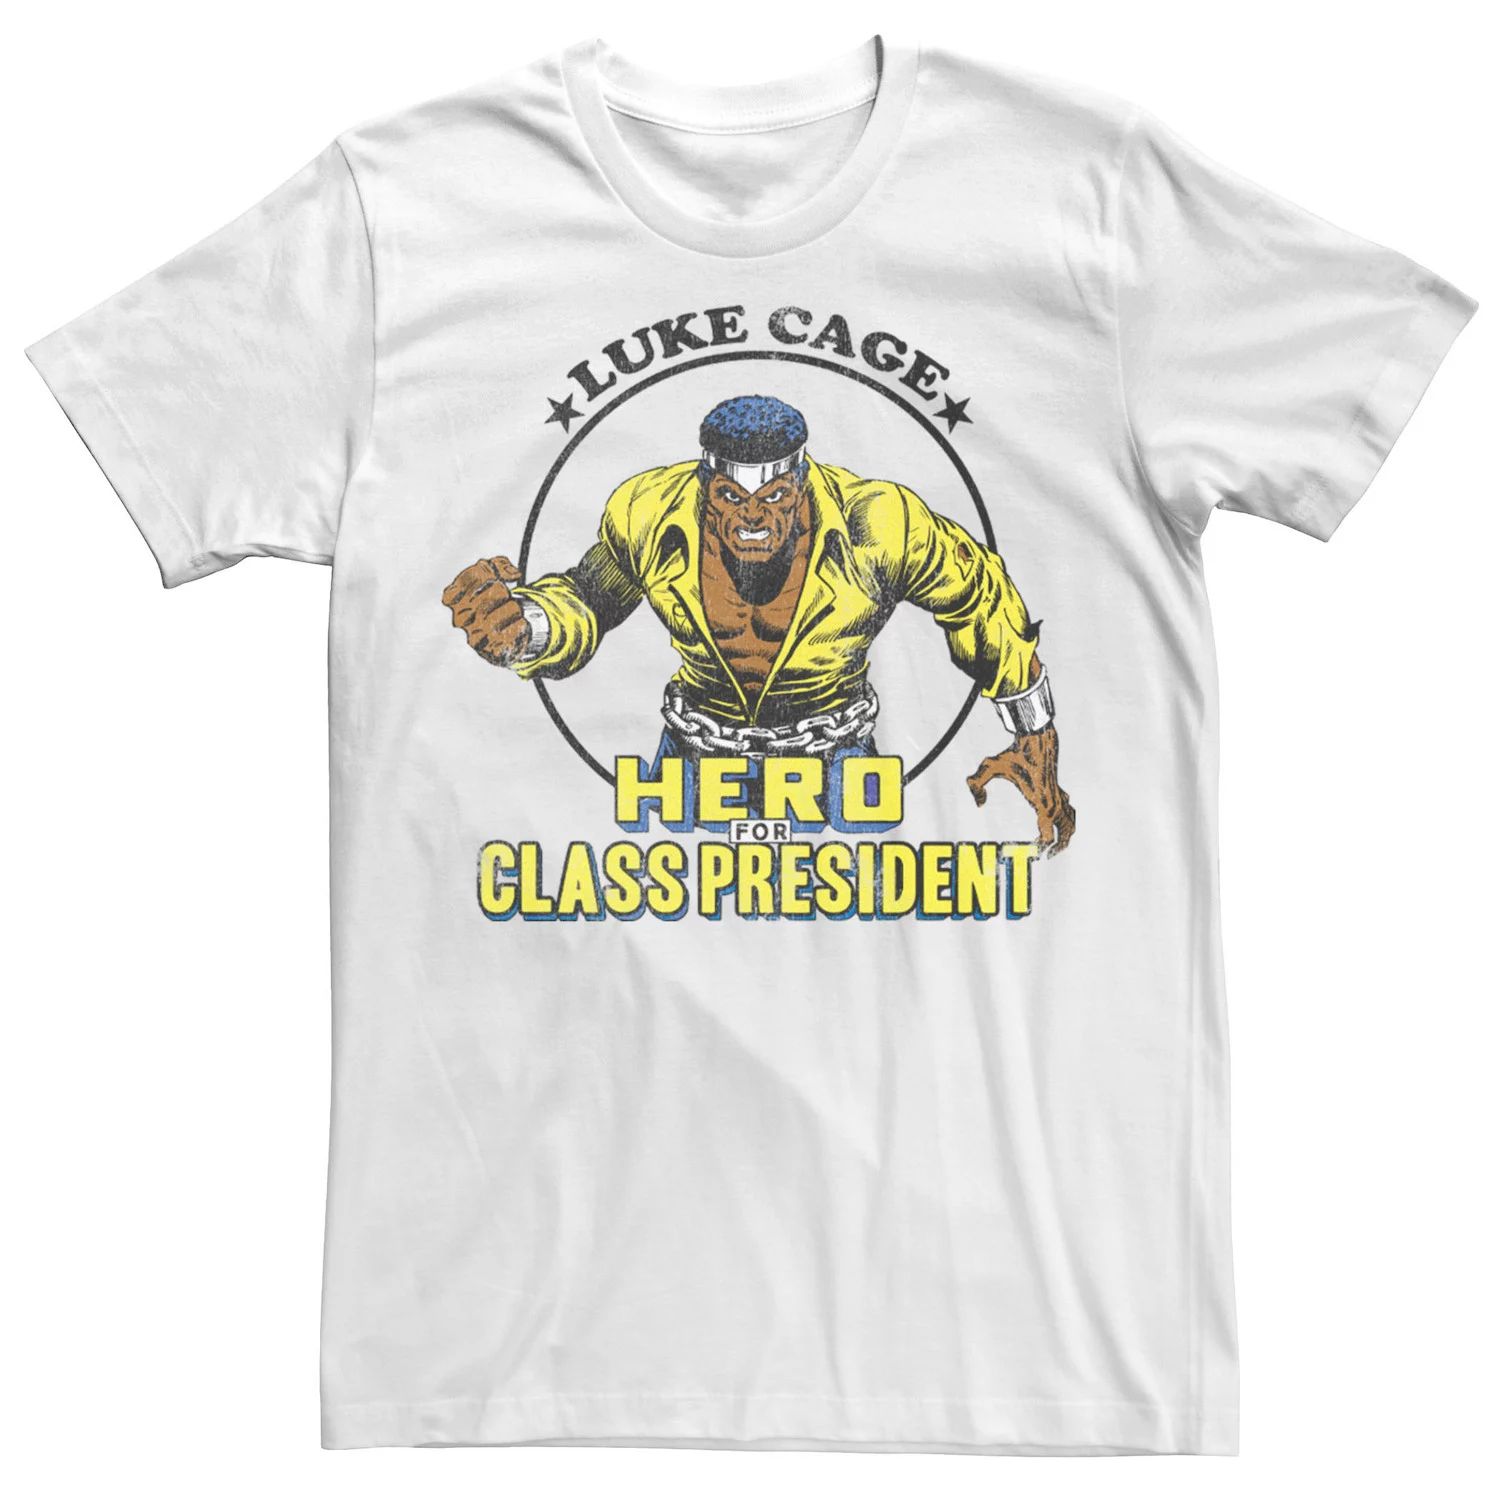 Мужская футболка Marvel Luke Cage Hero For Class President Licensed Character walker d luke cage volume 2 caged